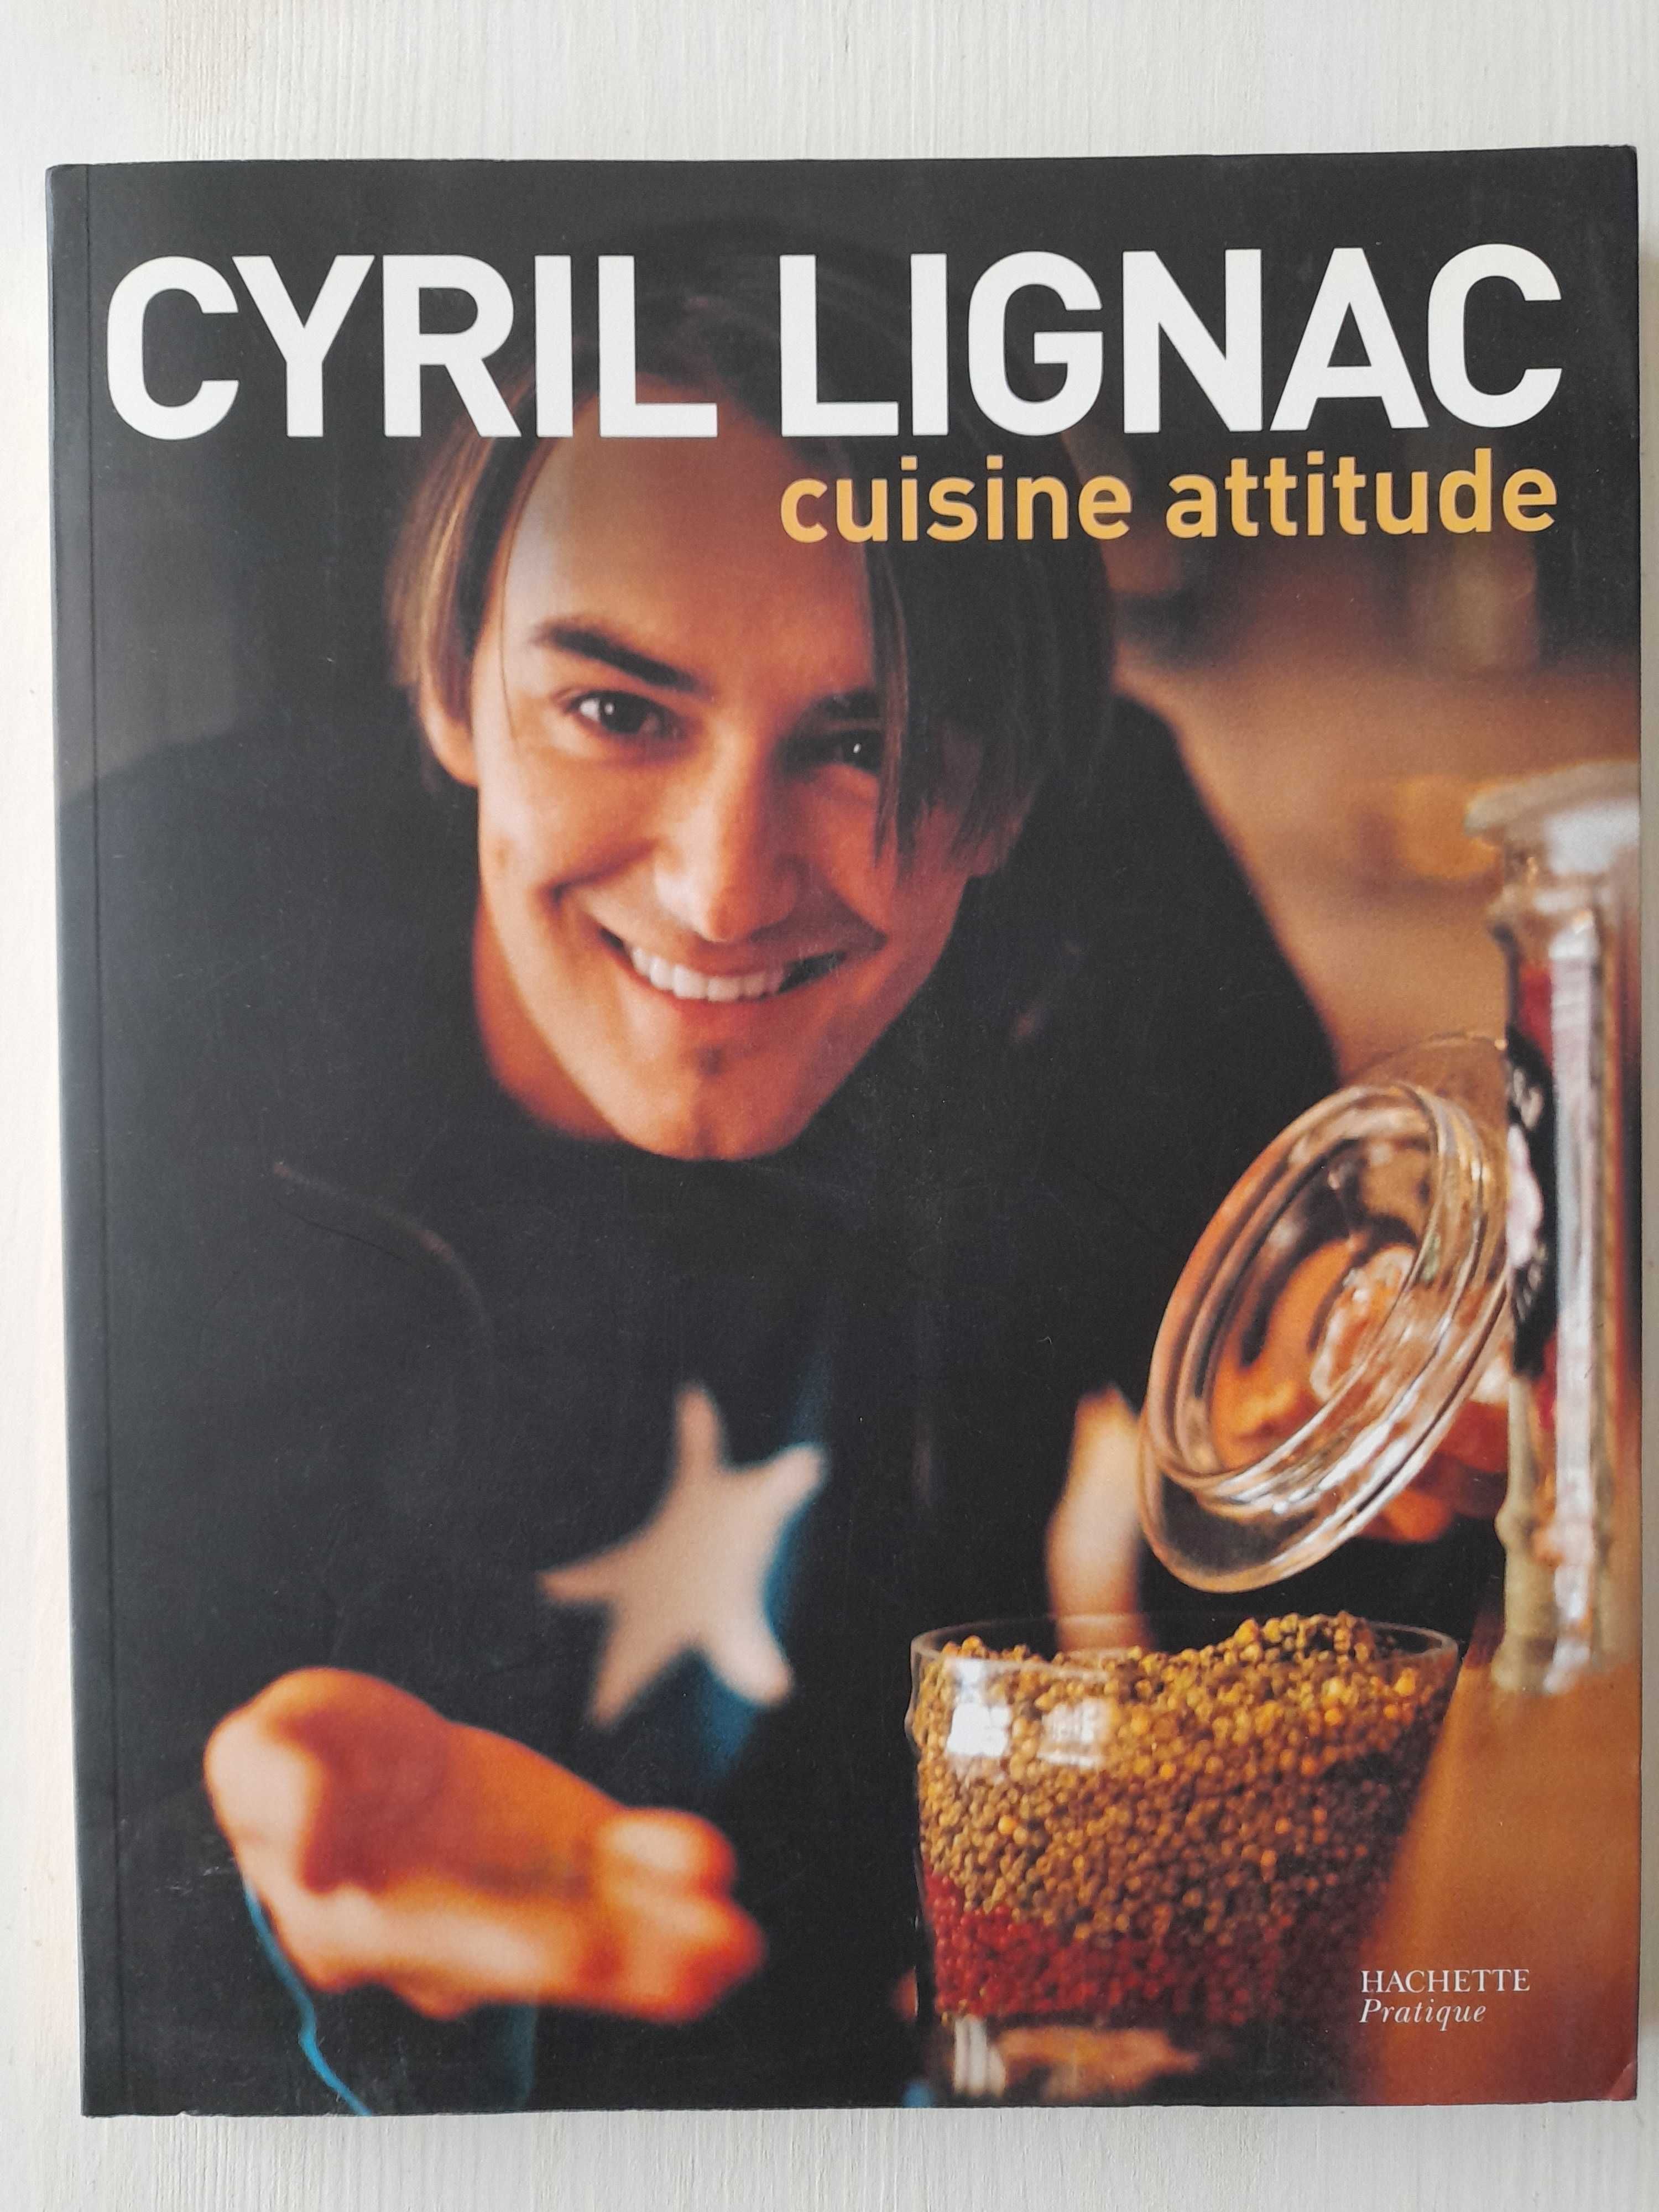 Cuisine attitude Cyril Lignac